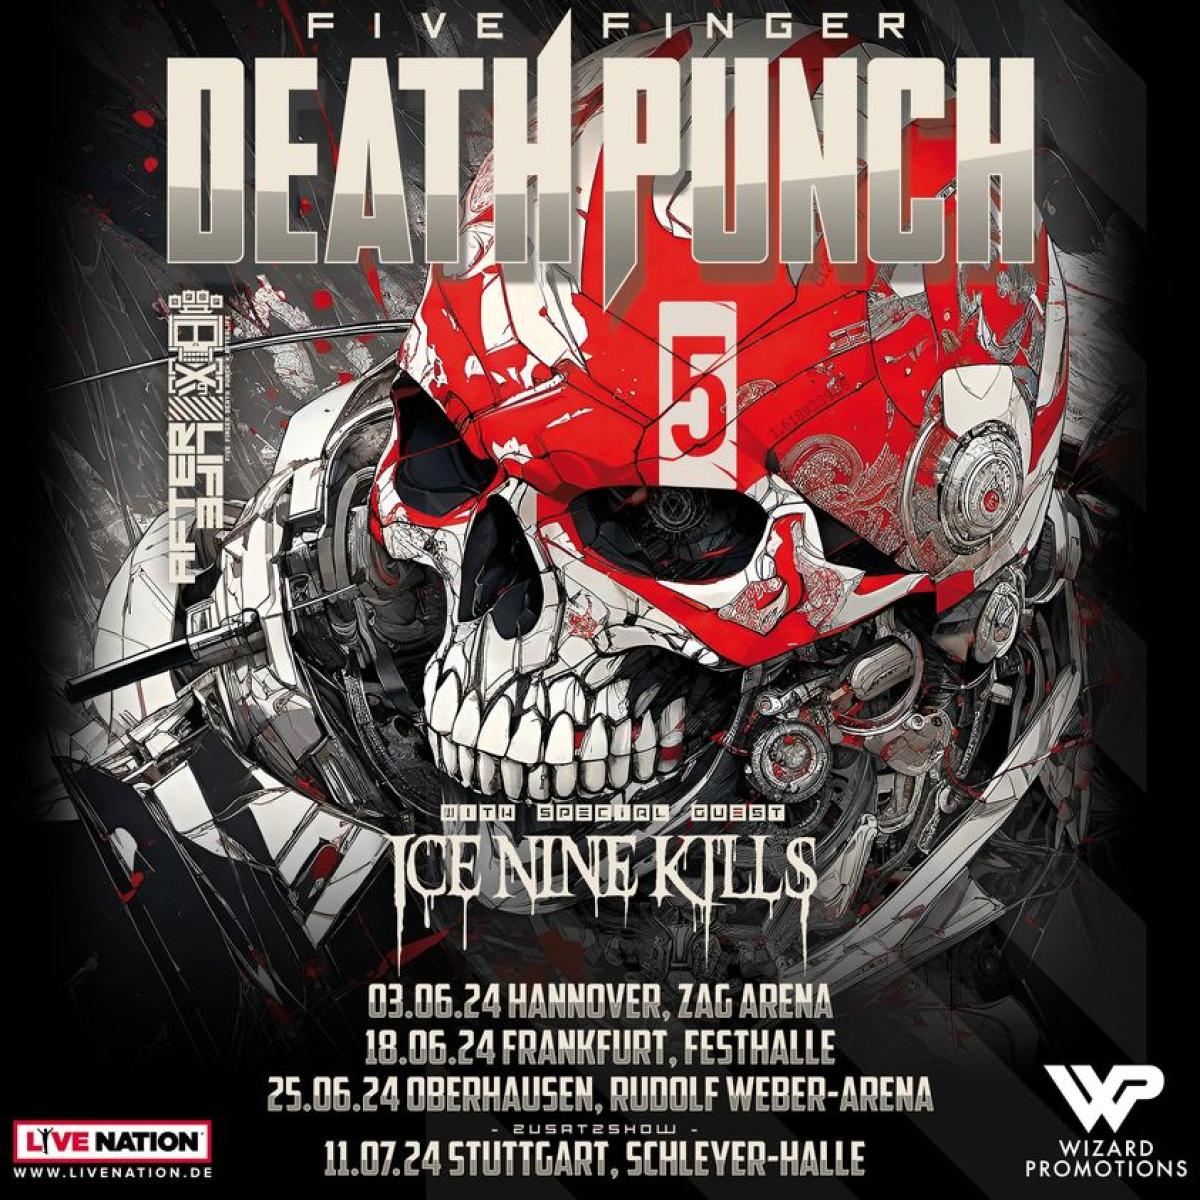 Billets Five Finger Death Punch (TUI Arena - Hanovre)